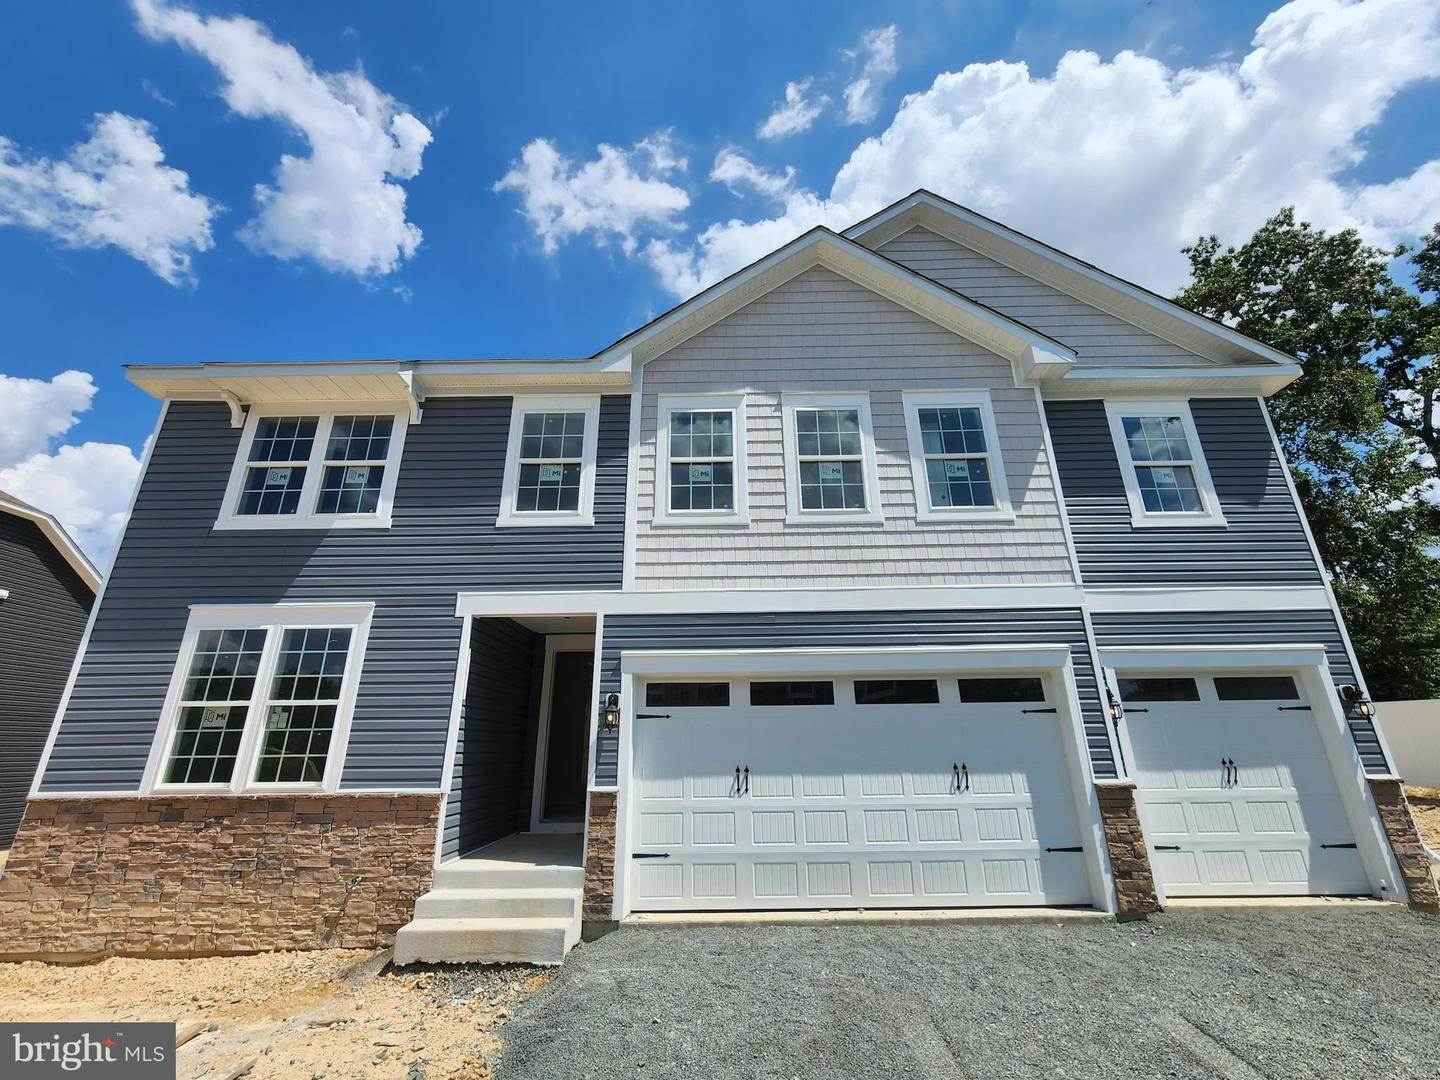 Single Family Homes для того Продажа на Jessup, Мэриленд 20794 Соединенные Штаты